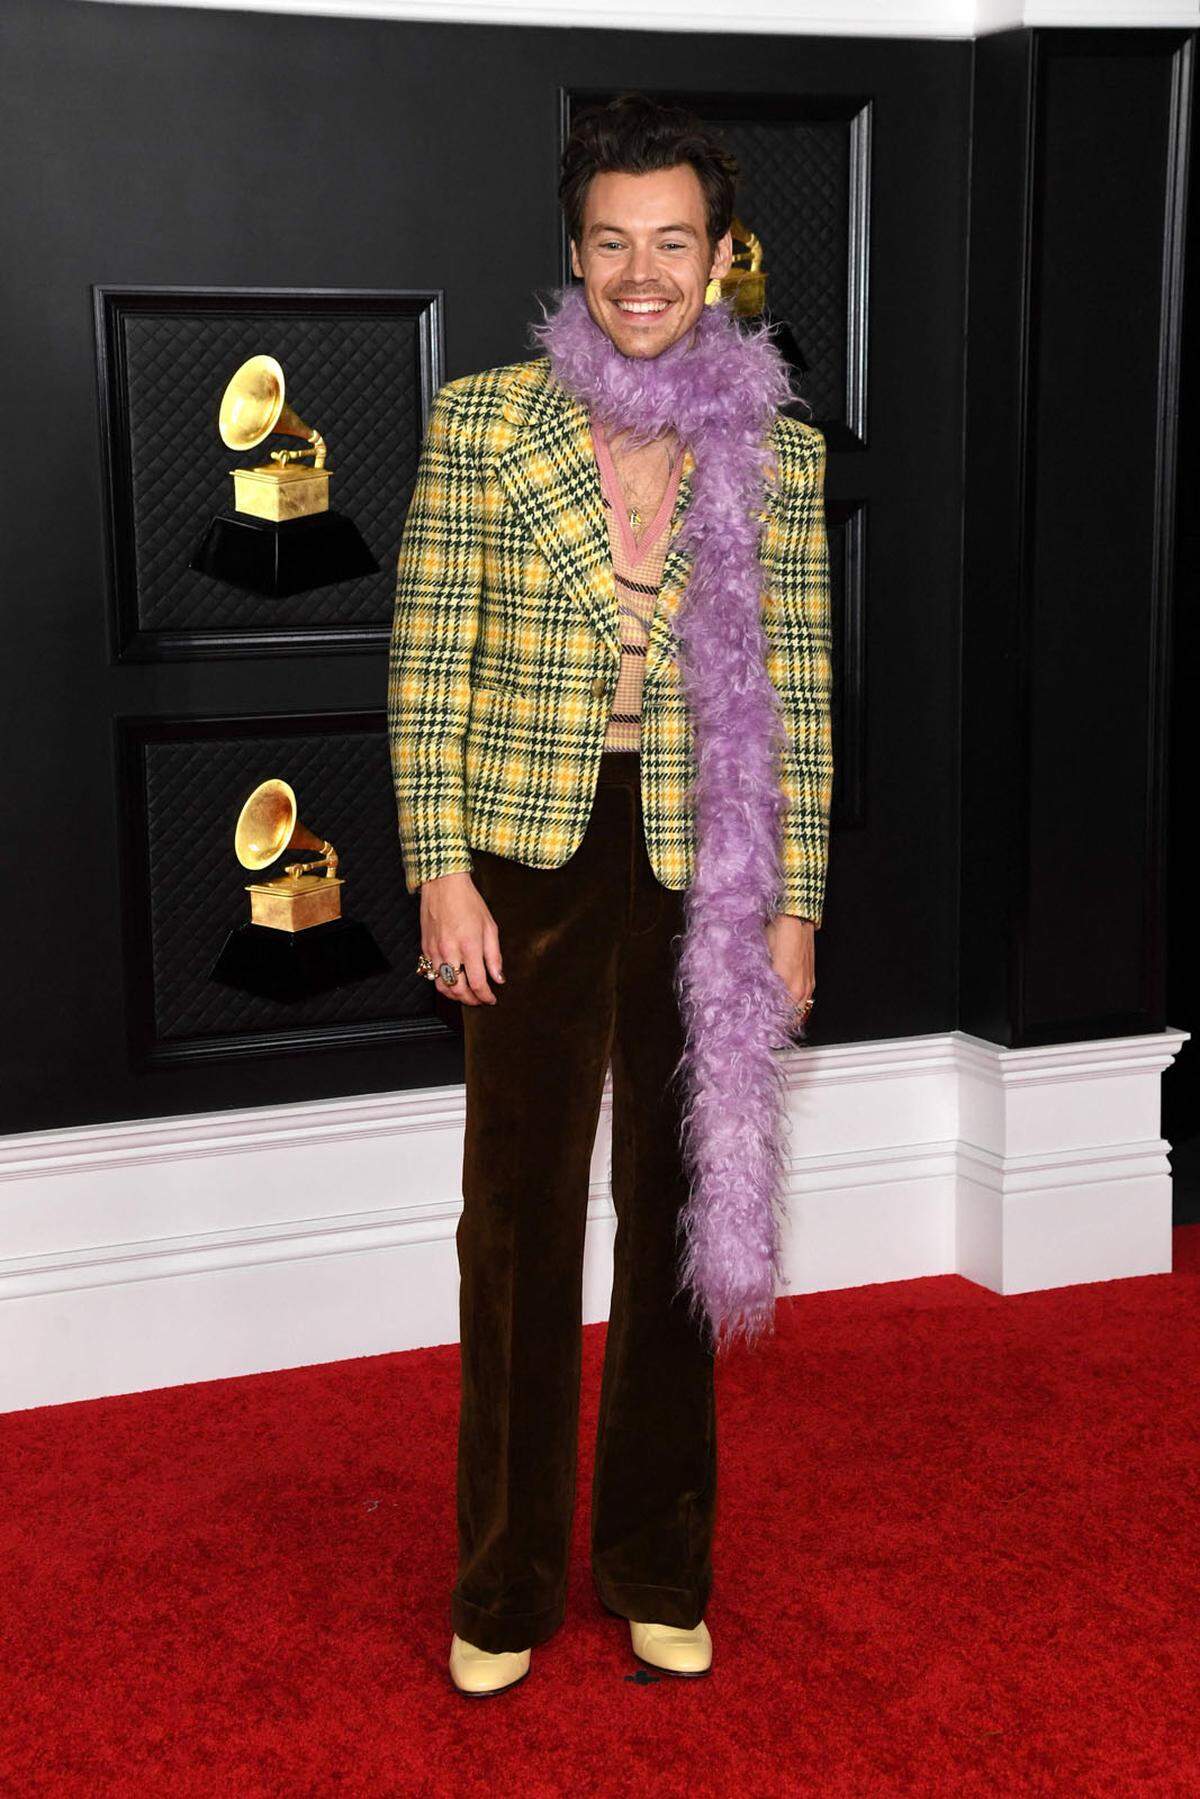 Wie auch schon bei den Golden Globes handelte es sich bei den 63. Grammy Awards um ein Hybridmodell aus physischer und virtueller Red-Carpet-Show und Preisverleihung. Während viele Nominierte zu Hause vor dem Bildschirm die Show verfolgten, waren einige Stars unter strengen Hygiene- und Sicherheitskonzepten auch im Los Angeles Convention Center anzutreffen. Und natürlich nahmen sie die Gelegenheit, sich wieder für einen richtigen Red Carpet in Schale zu werfen, wahr. So etwa Musiker Harry Styles, der mit einer violetten Boa erschien.